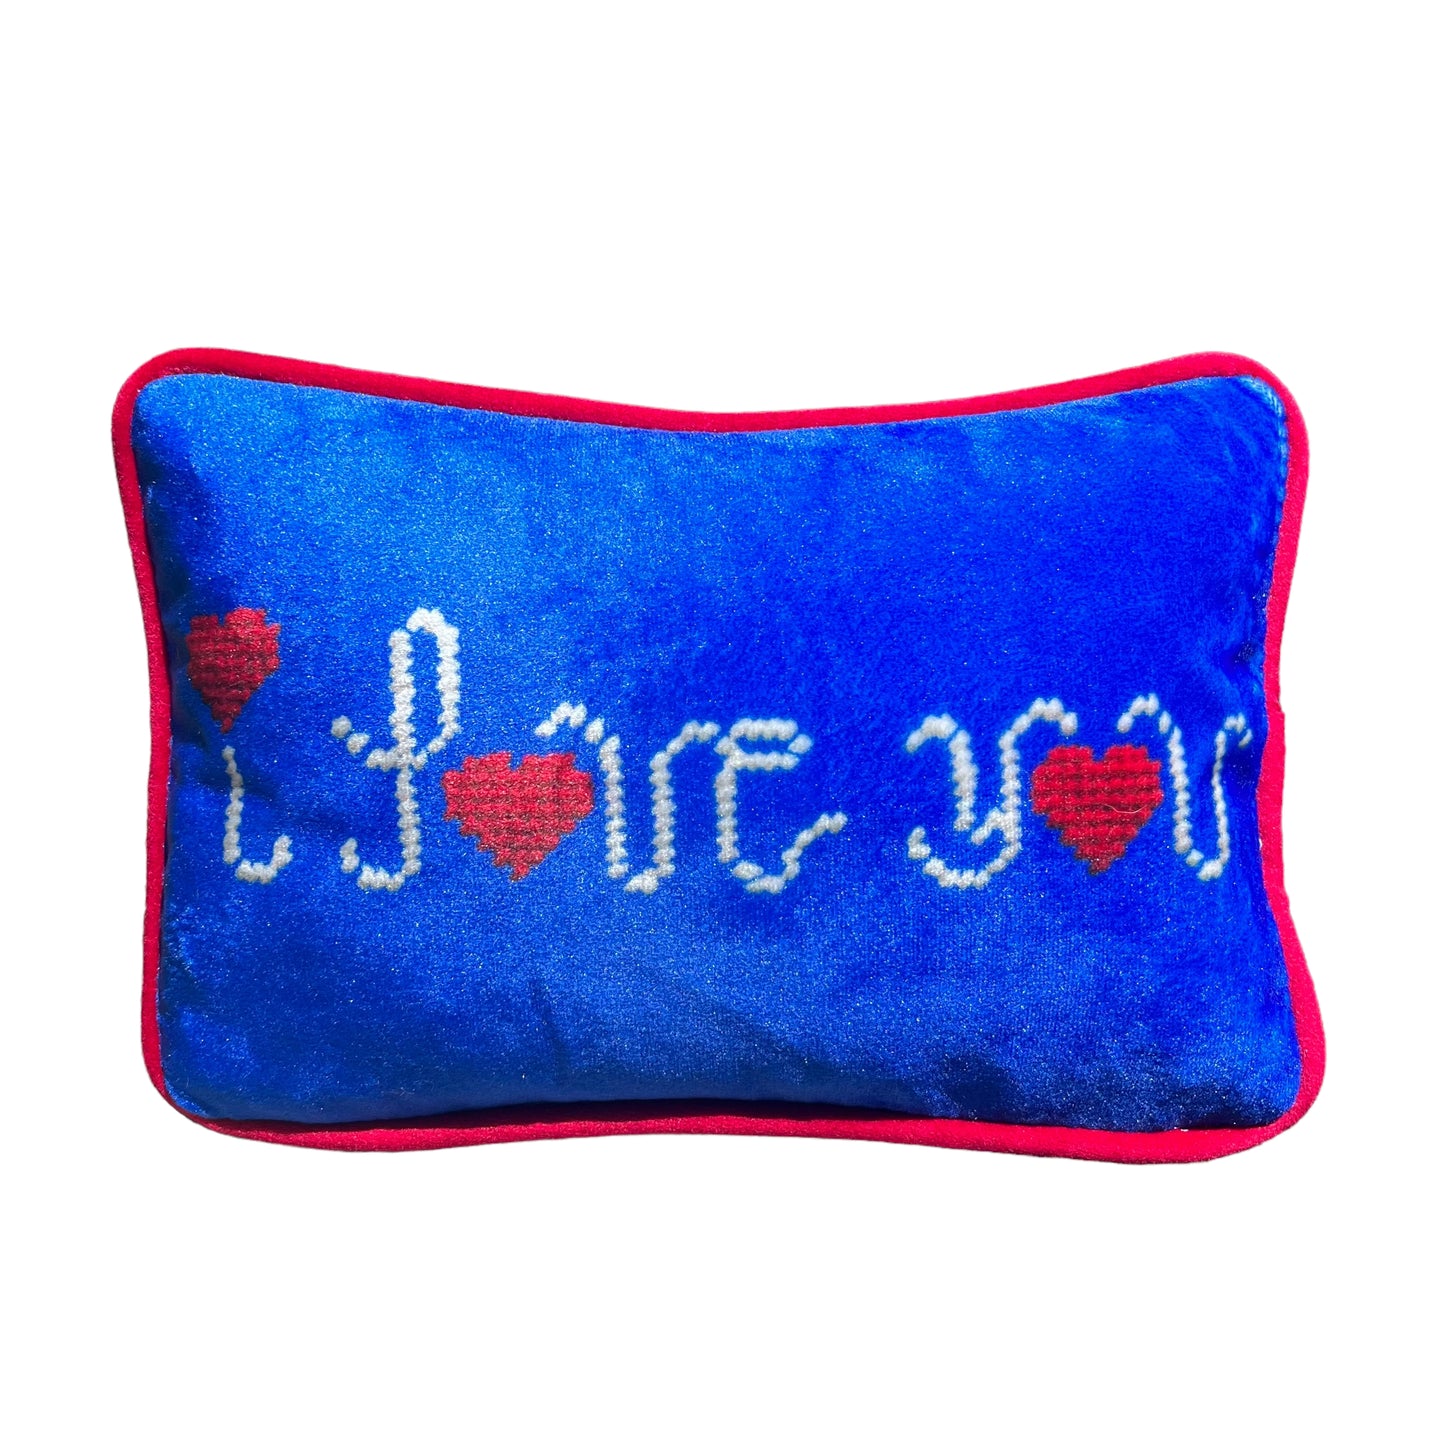 I LOVE YOU blue velvet toss pillow